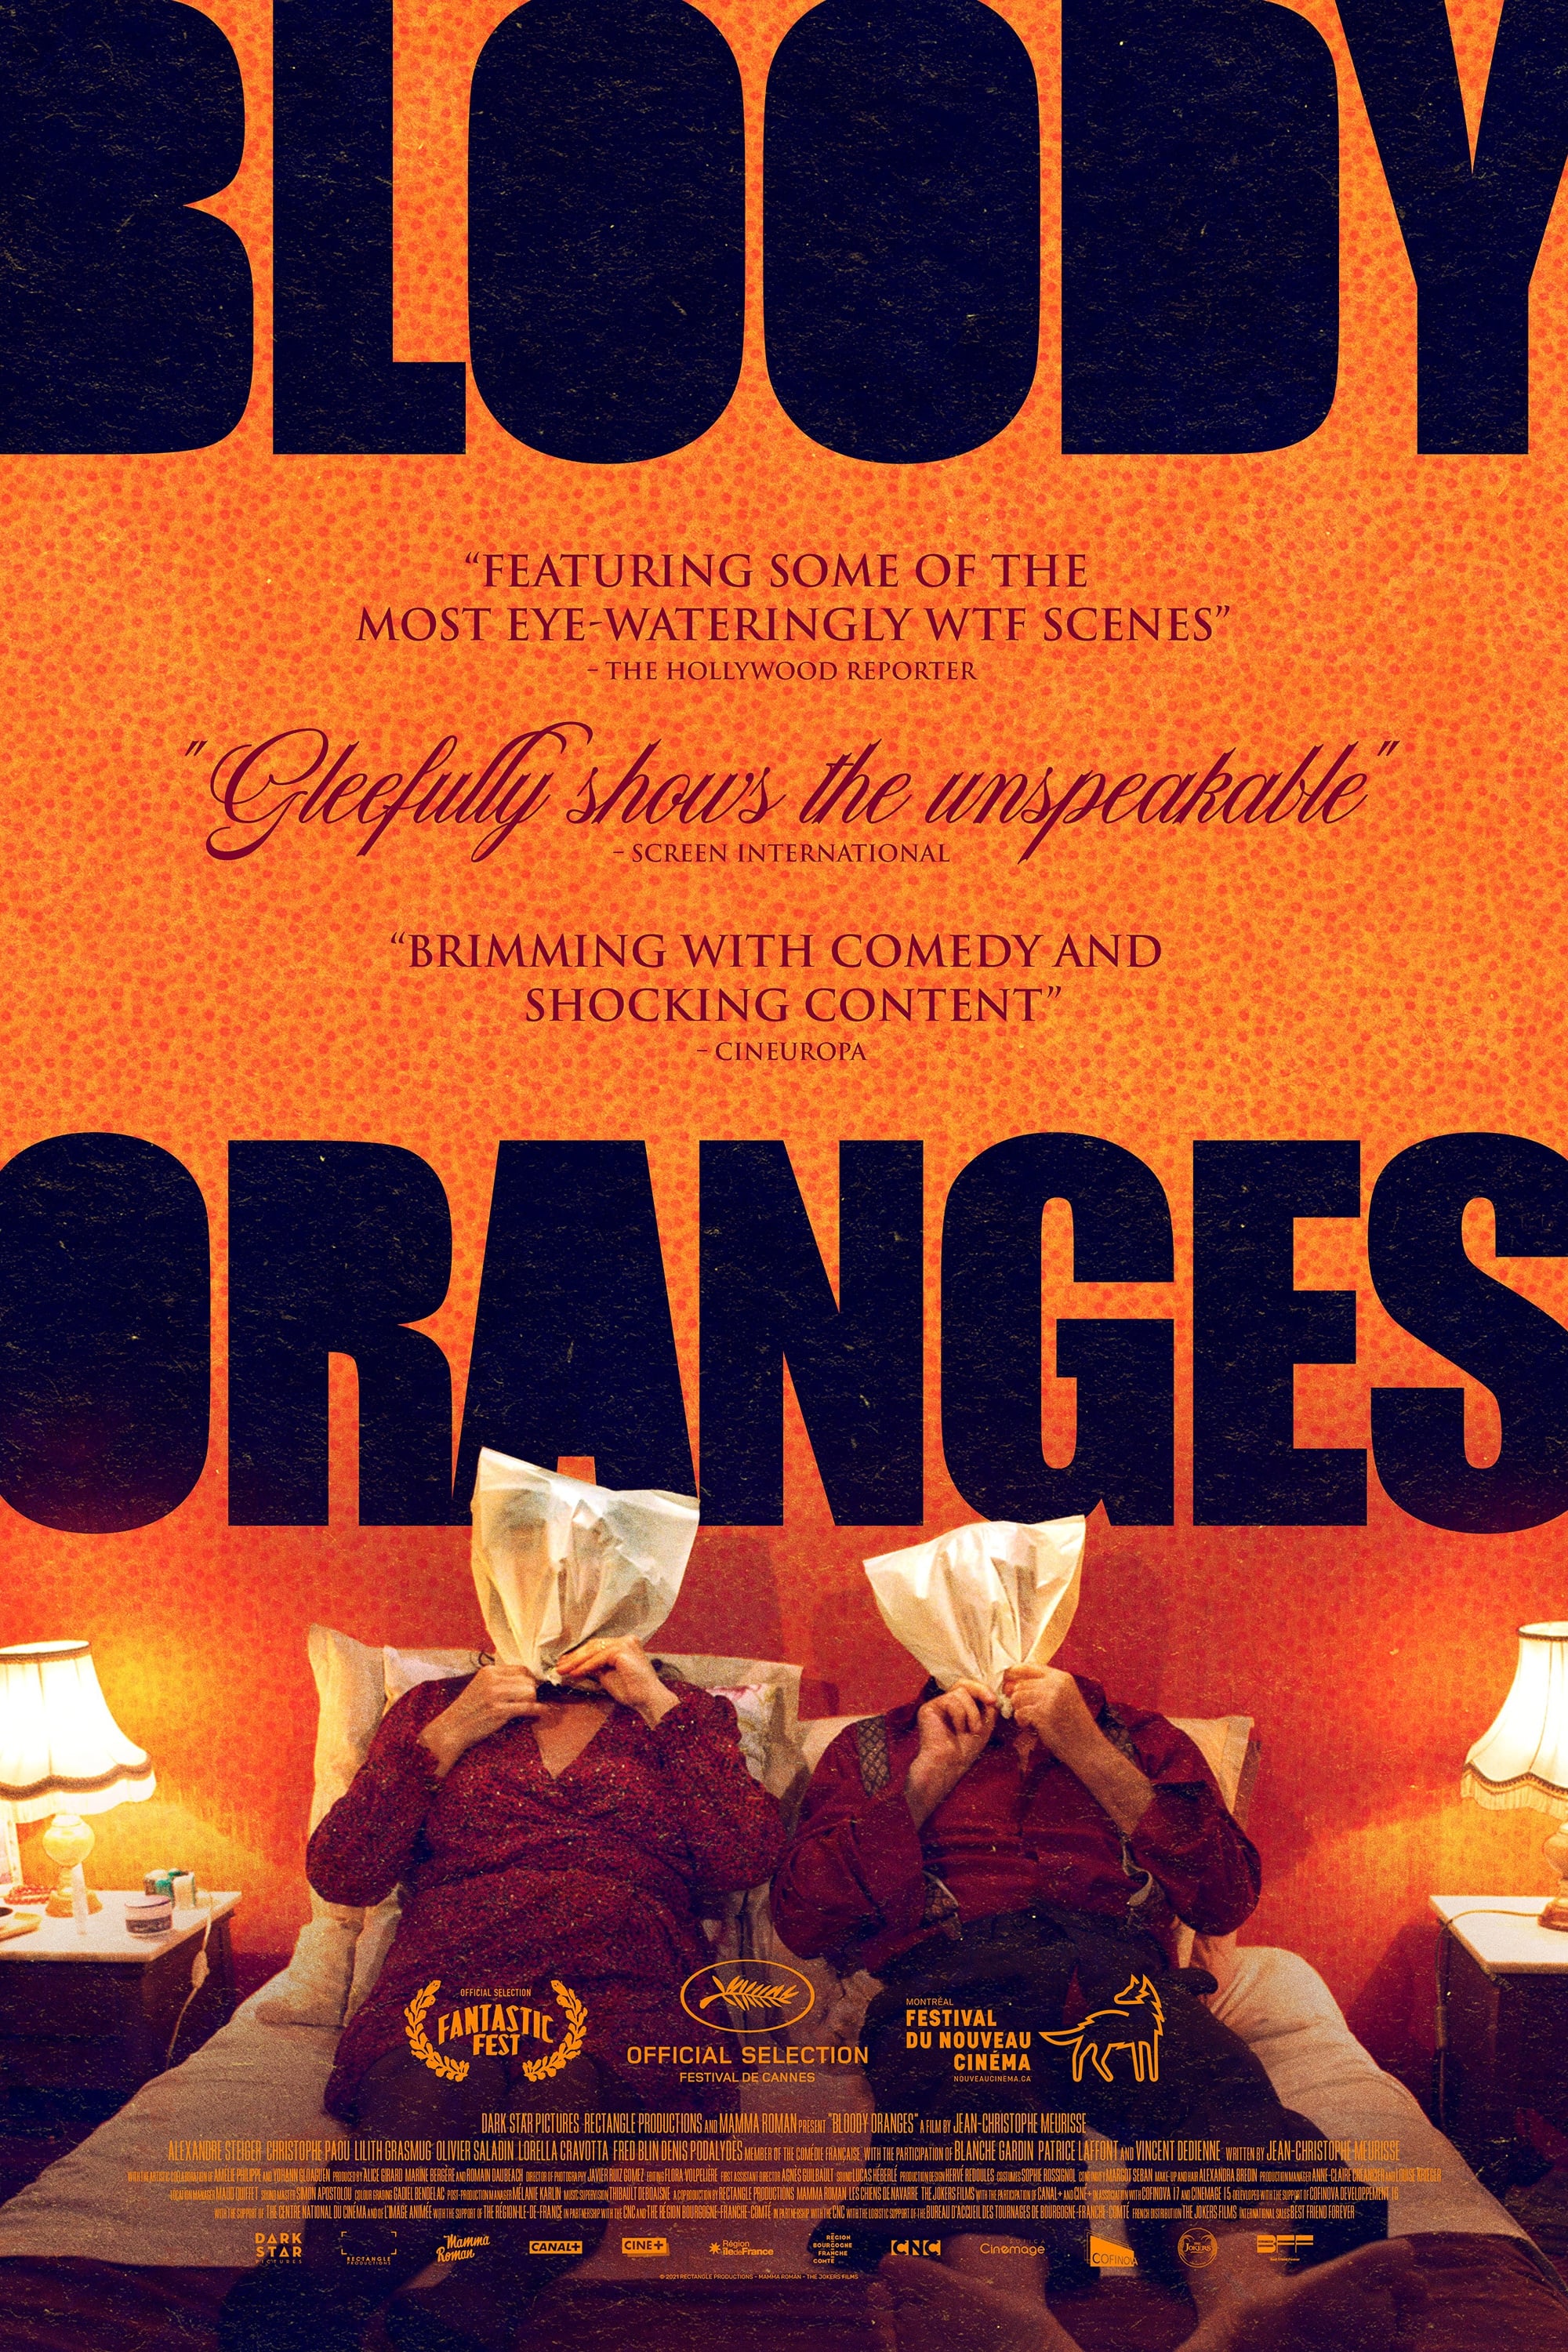 Krvavé pomeranče